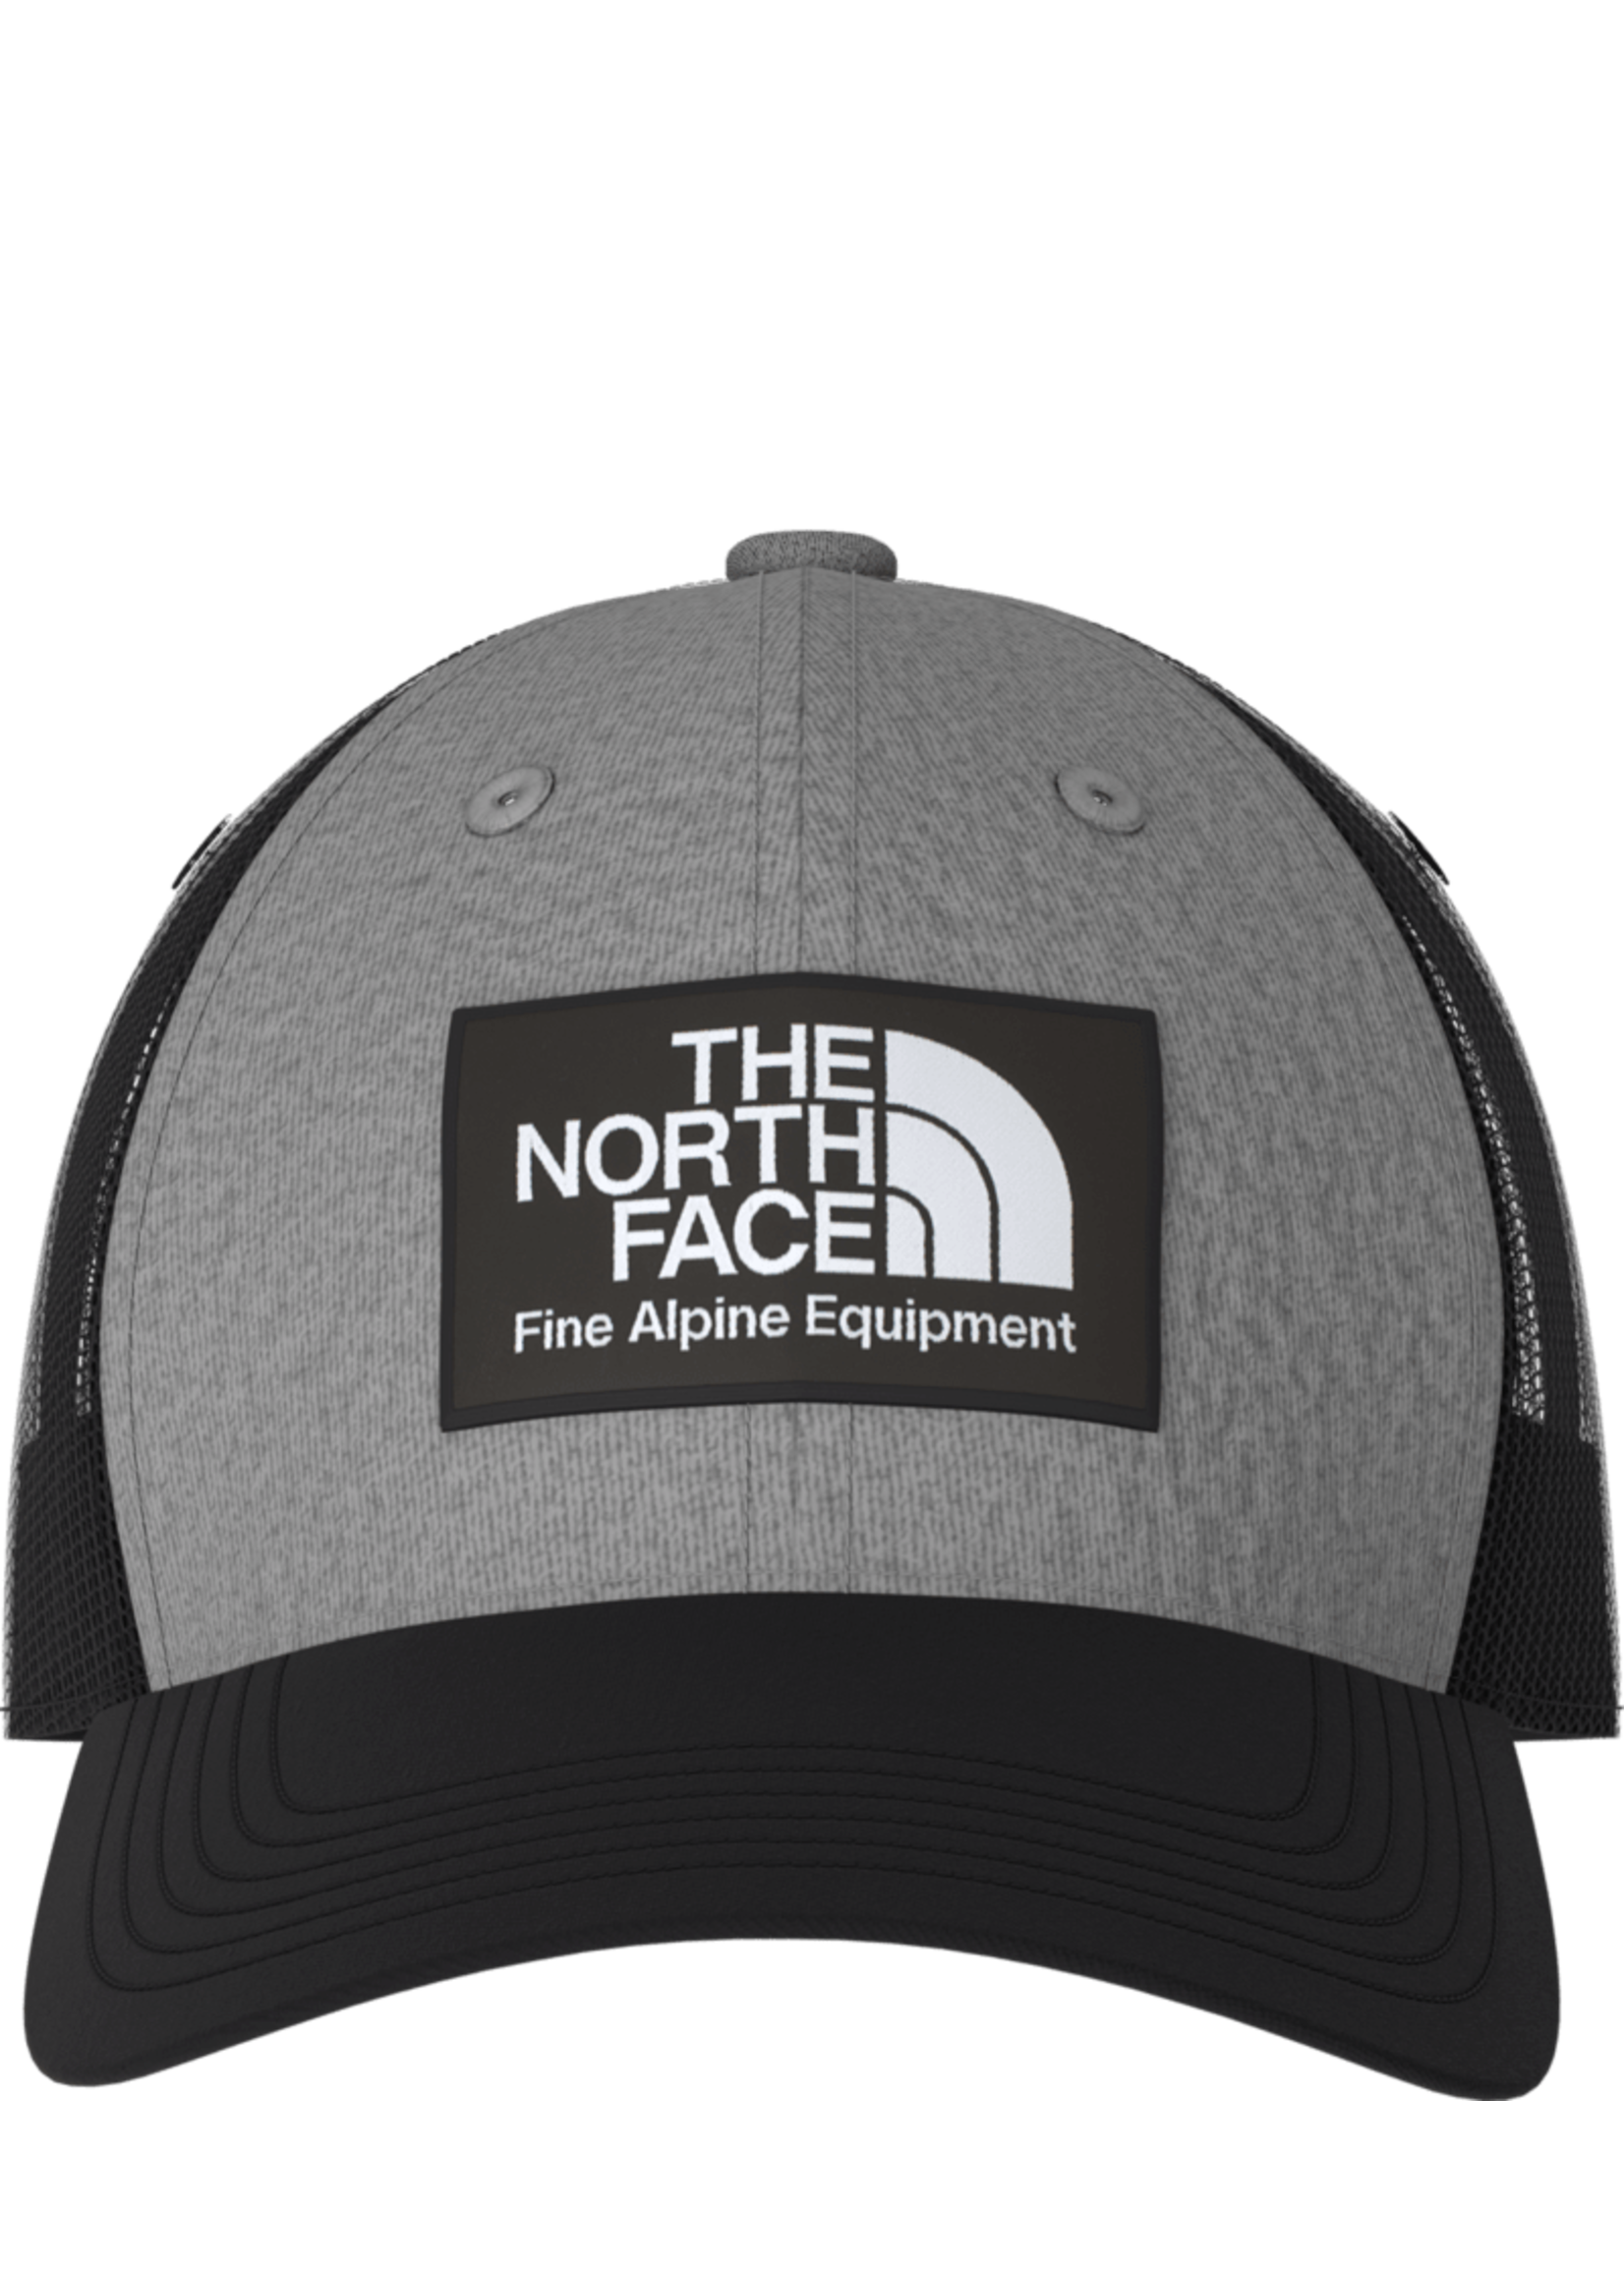 The North Face Mudder Trucker Hat - TNF Black/TNF Medium Grey Heather